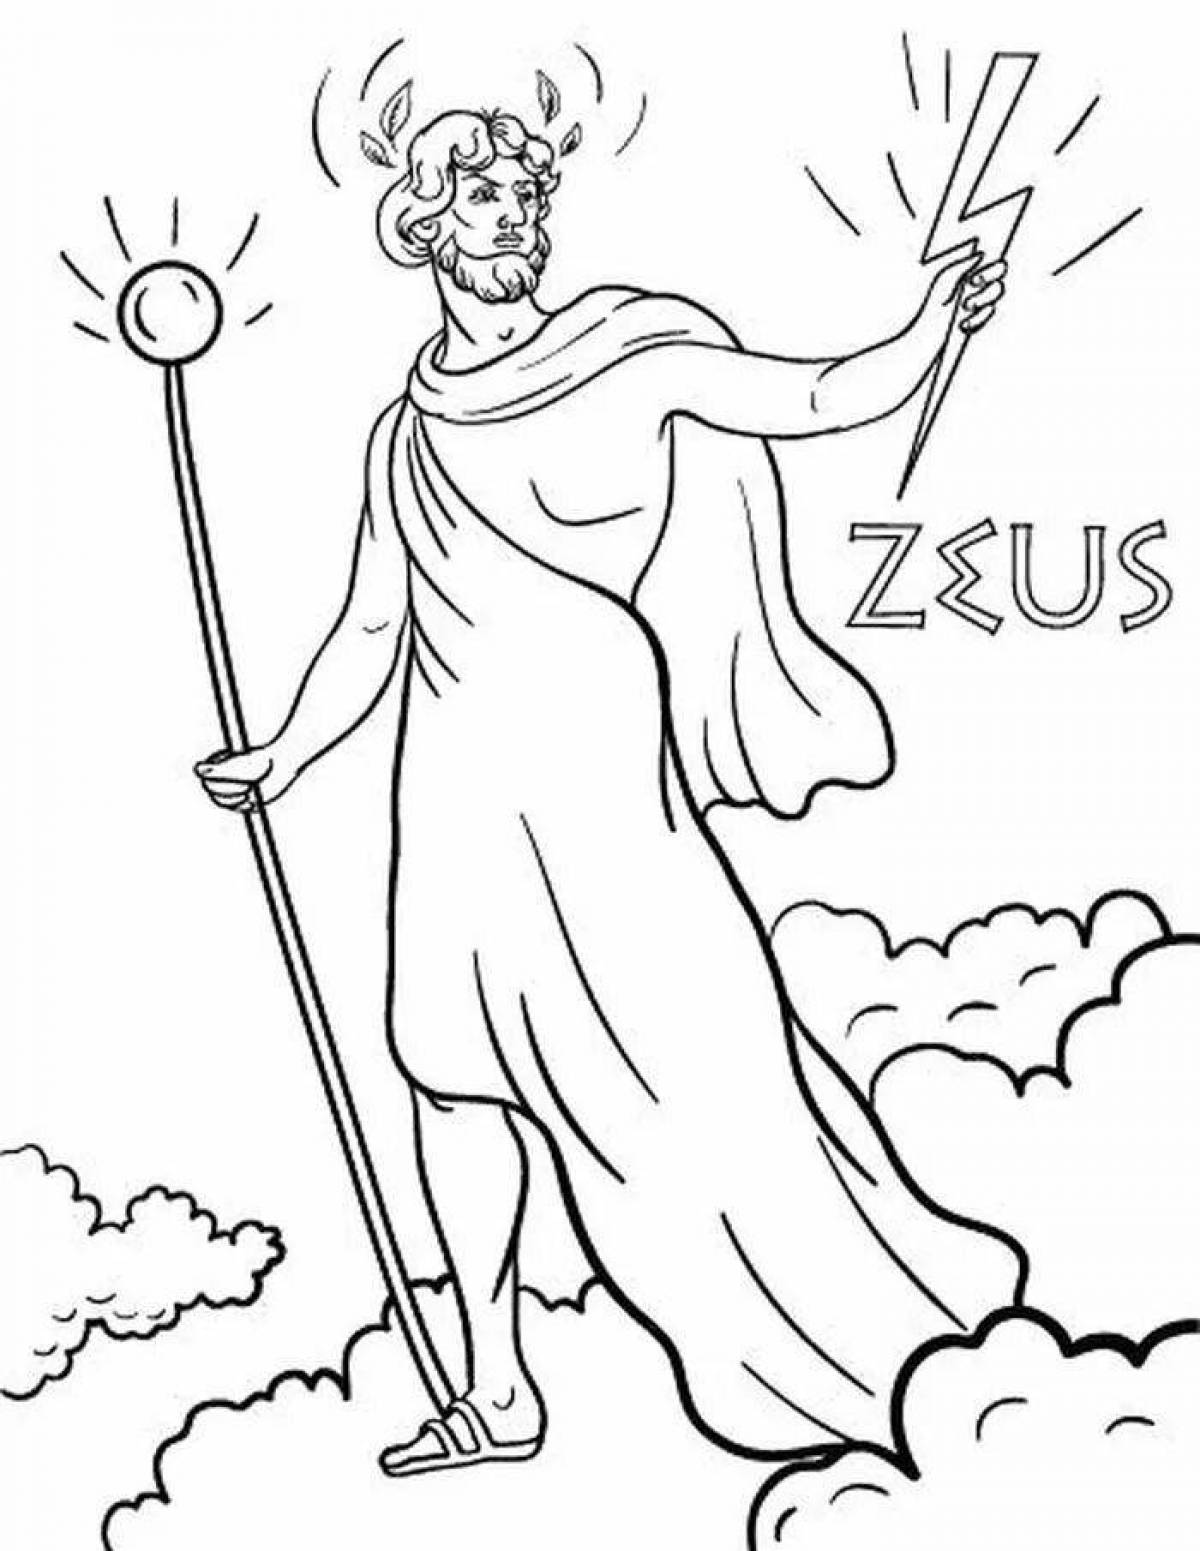 Зевс Бог древней Греции рисунок карандашом